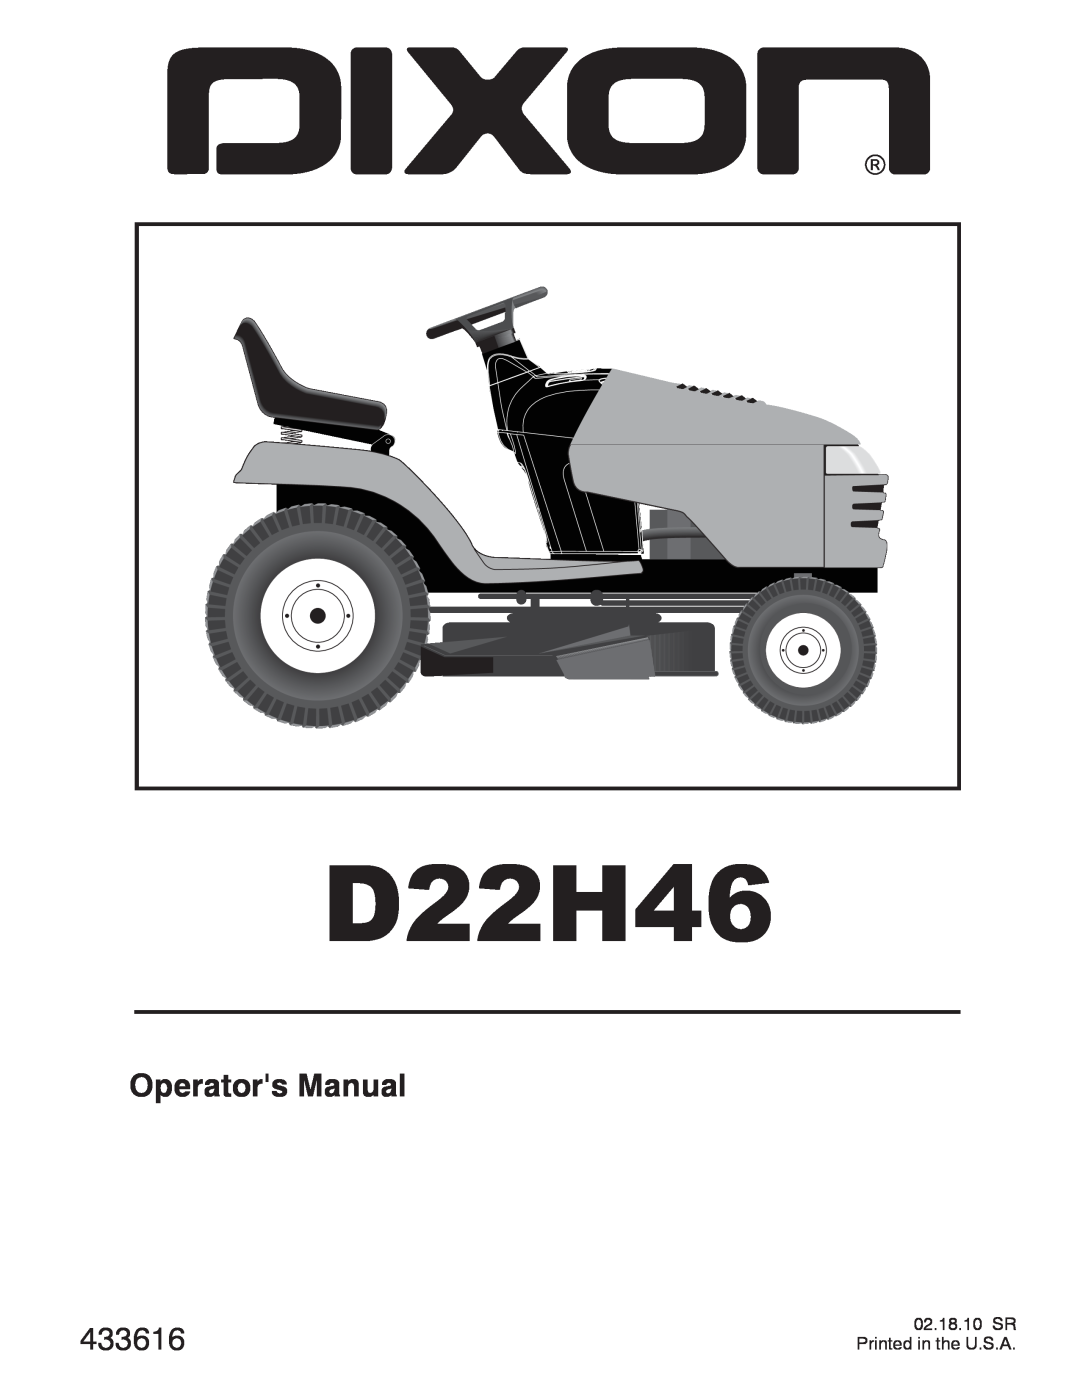 Dixon D22H46 manual Operators Manual, 433616 